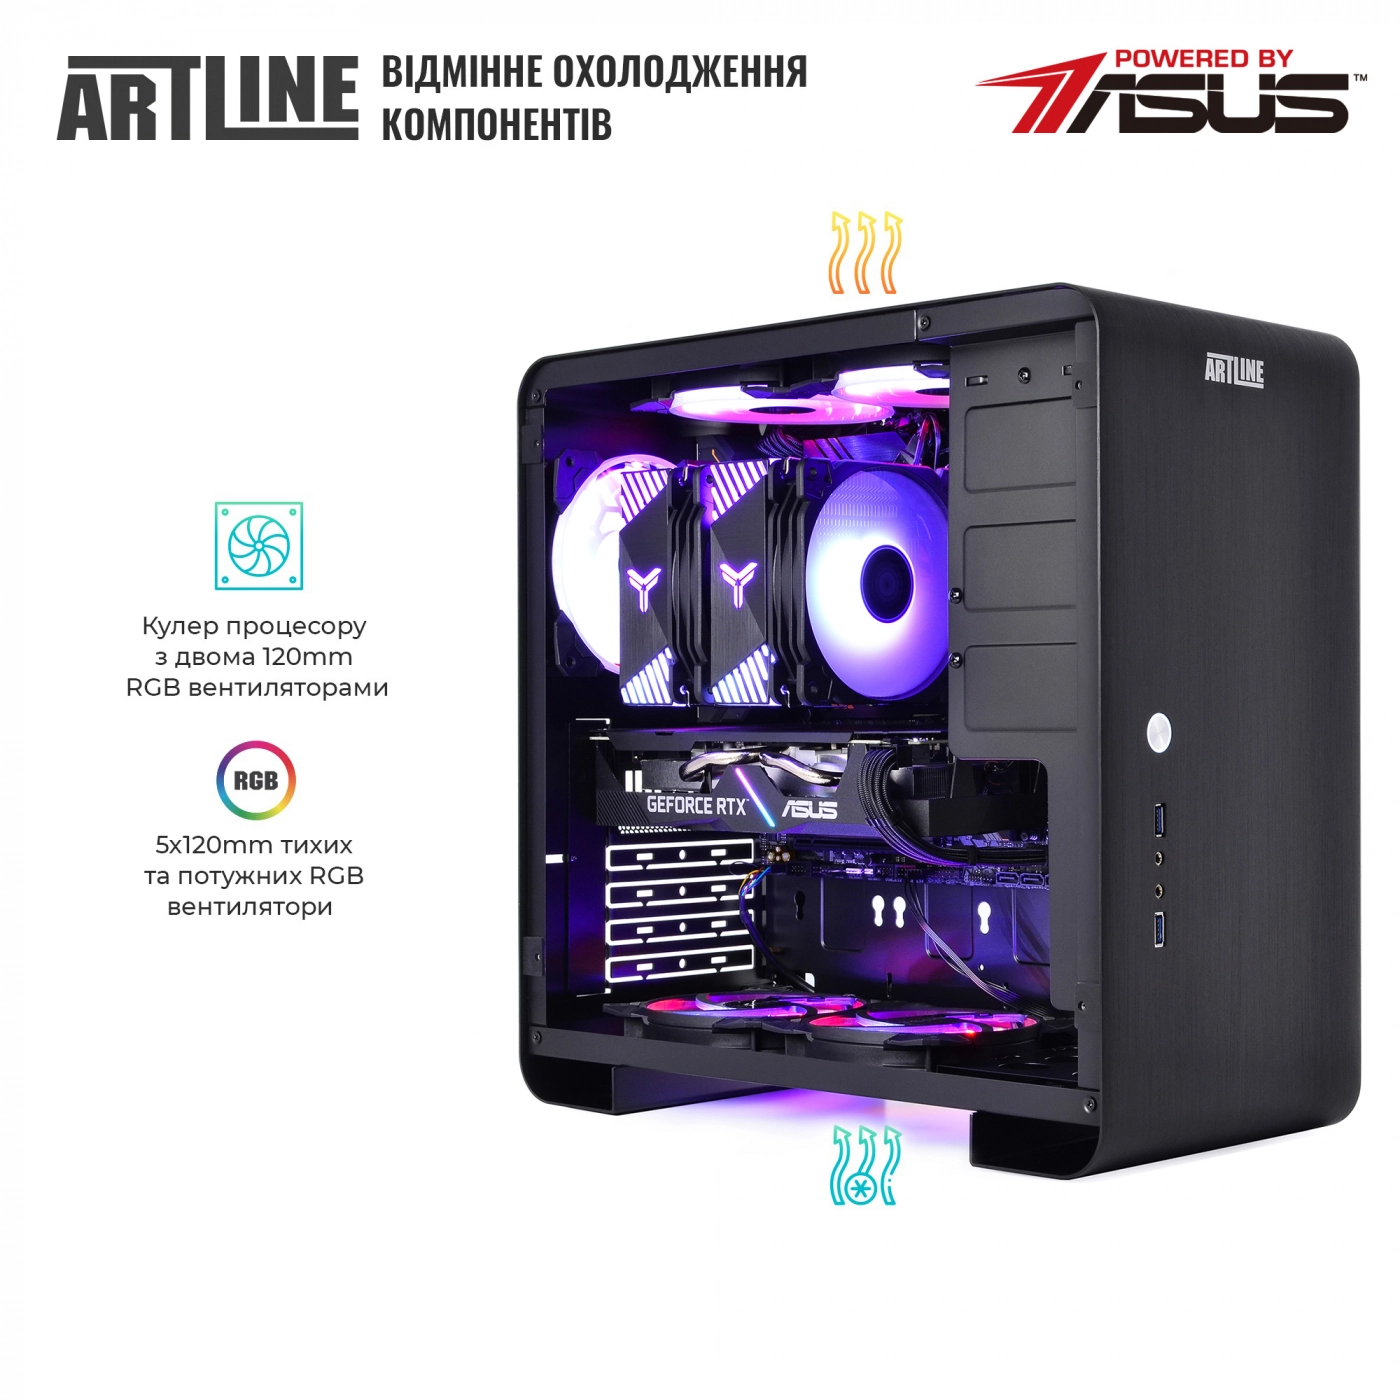 Купить Компьютер ARTLINE Gaming X75v34 - фото 6